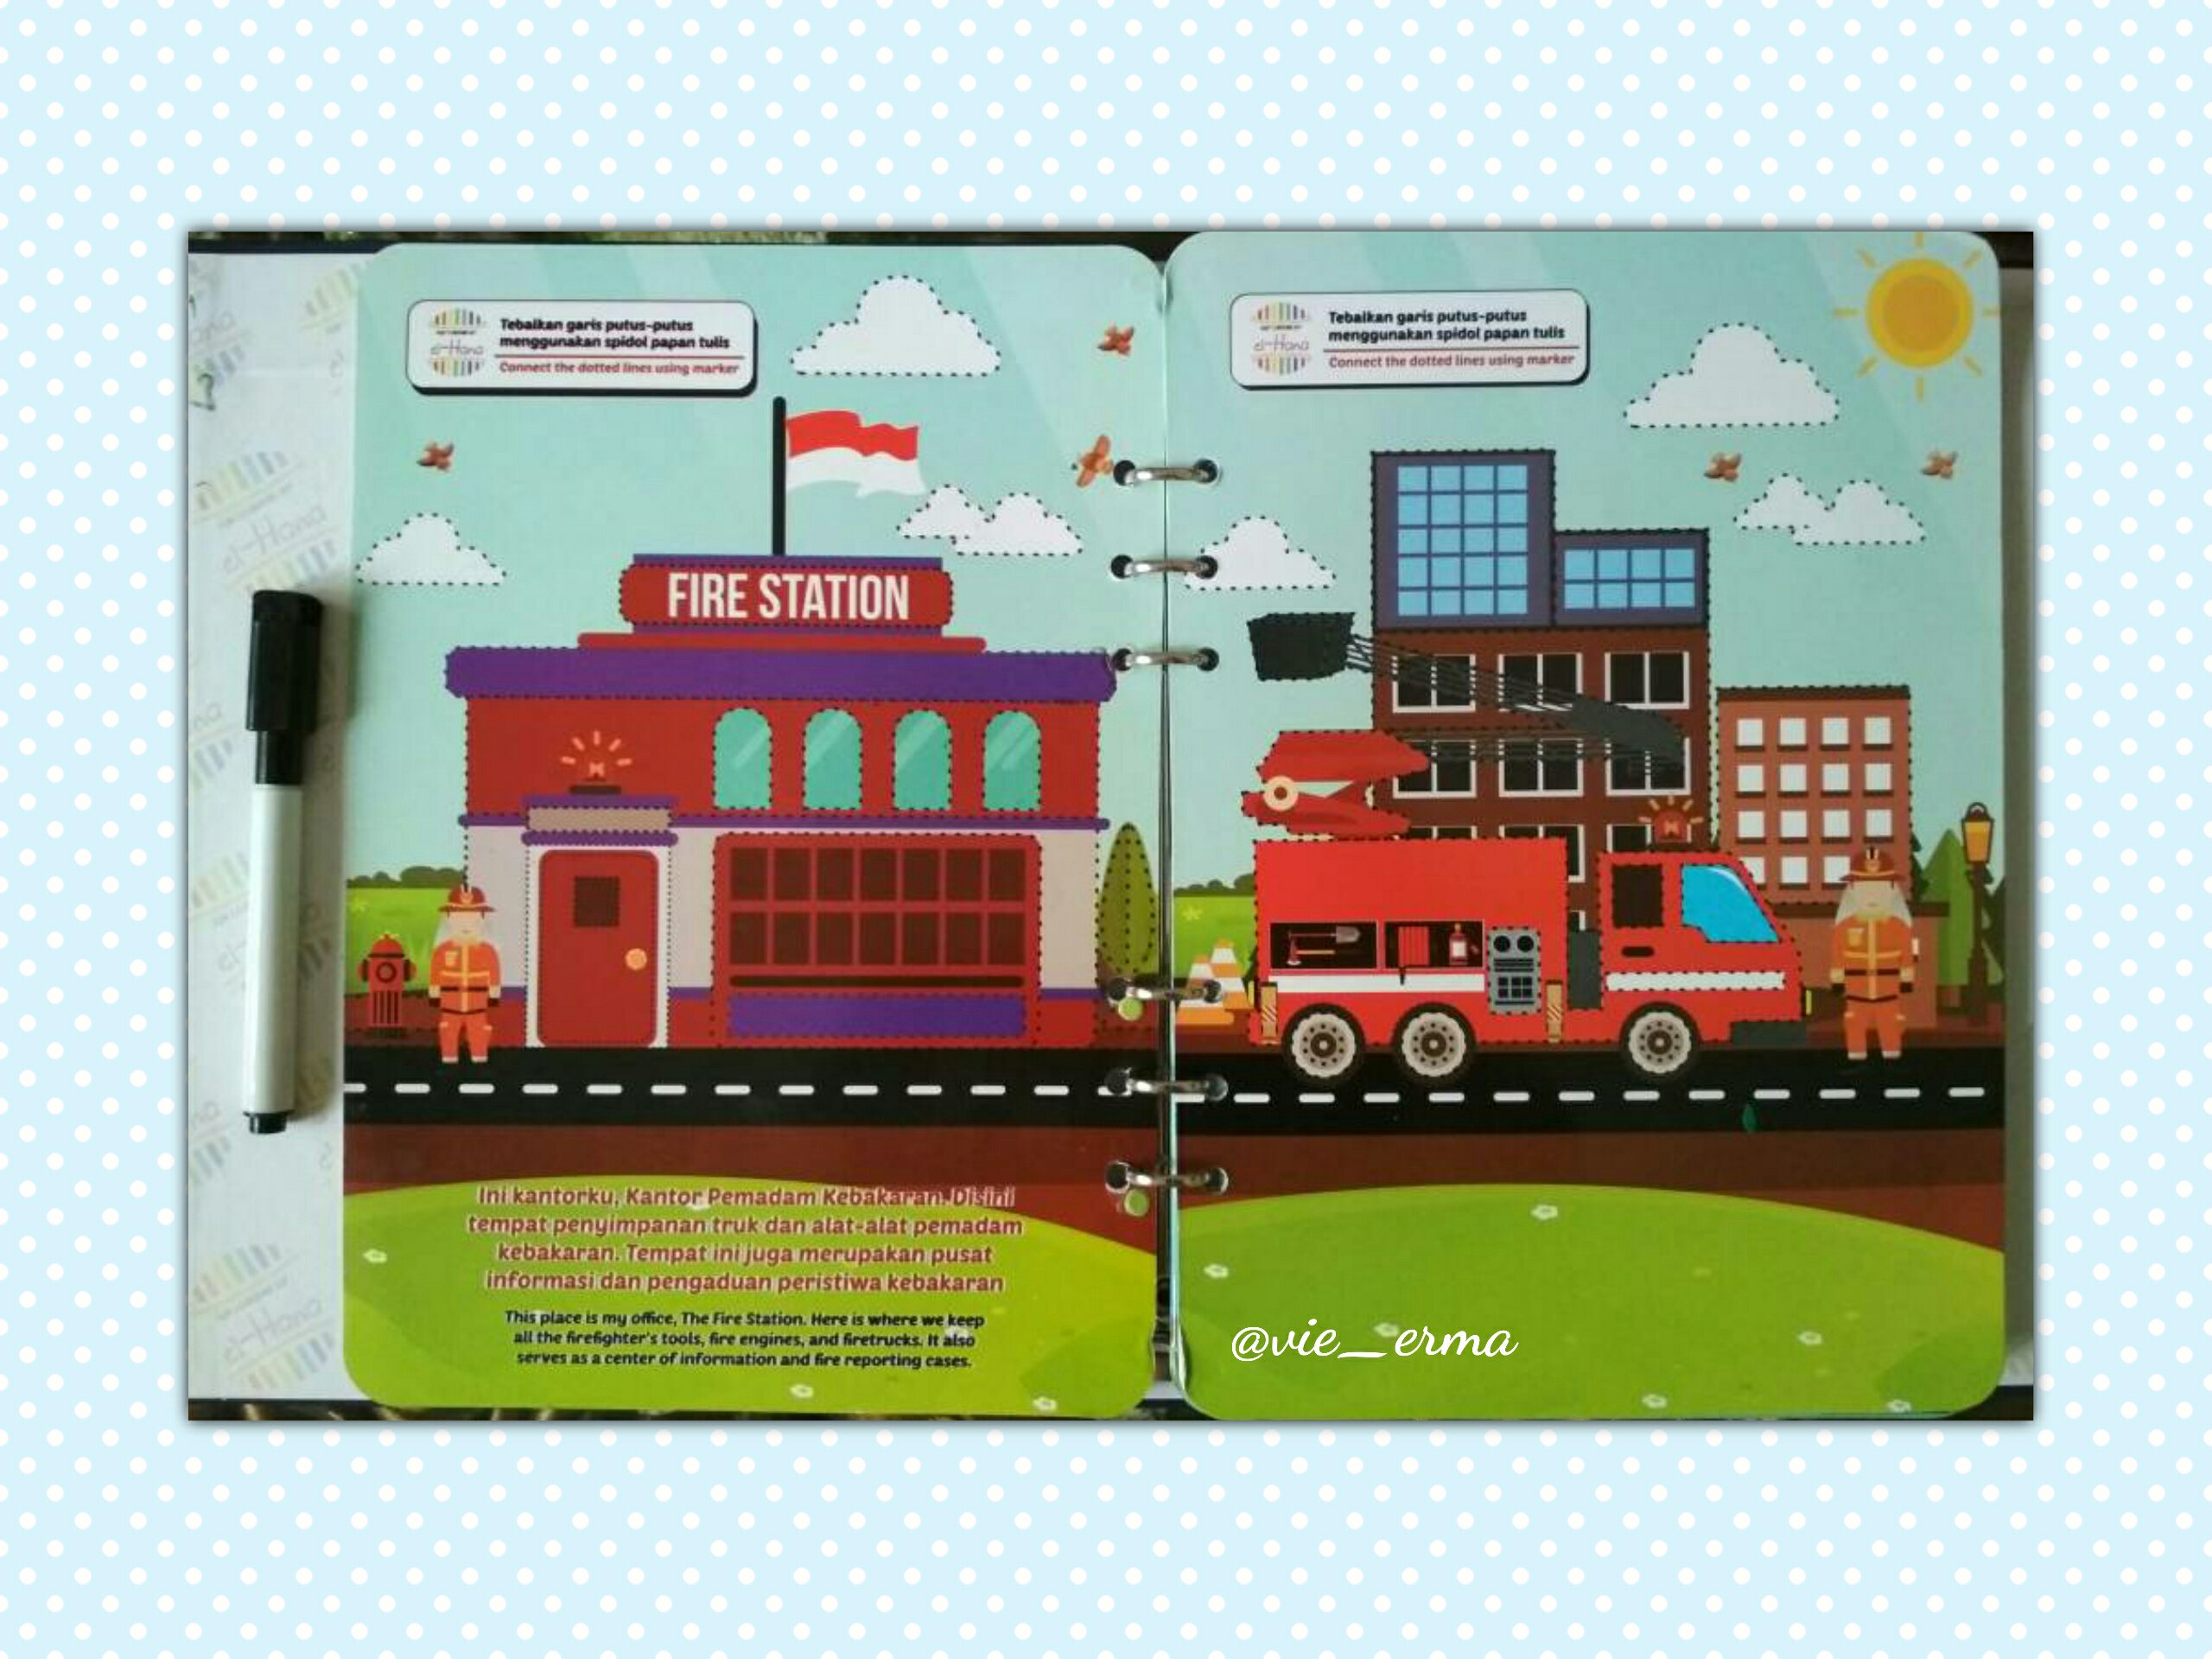 Buku ini merupakan buku bilingual Indonesia – Inggris jadi anak anak bisa sekalian belajar istilah alat pemadam kebakaran dalam bahasa inggris